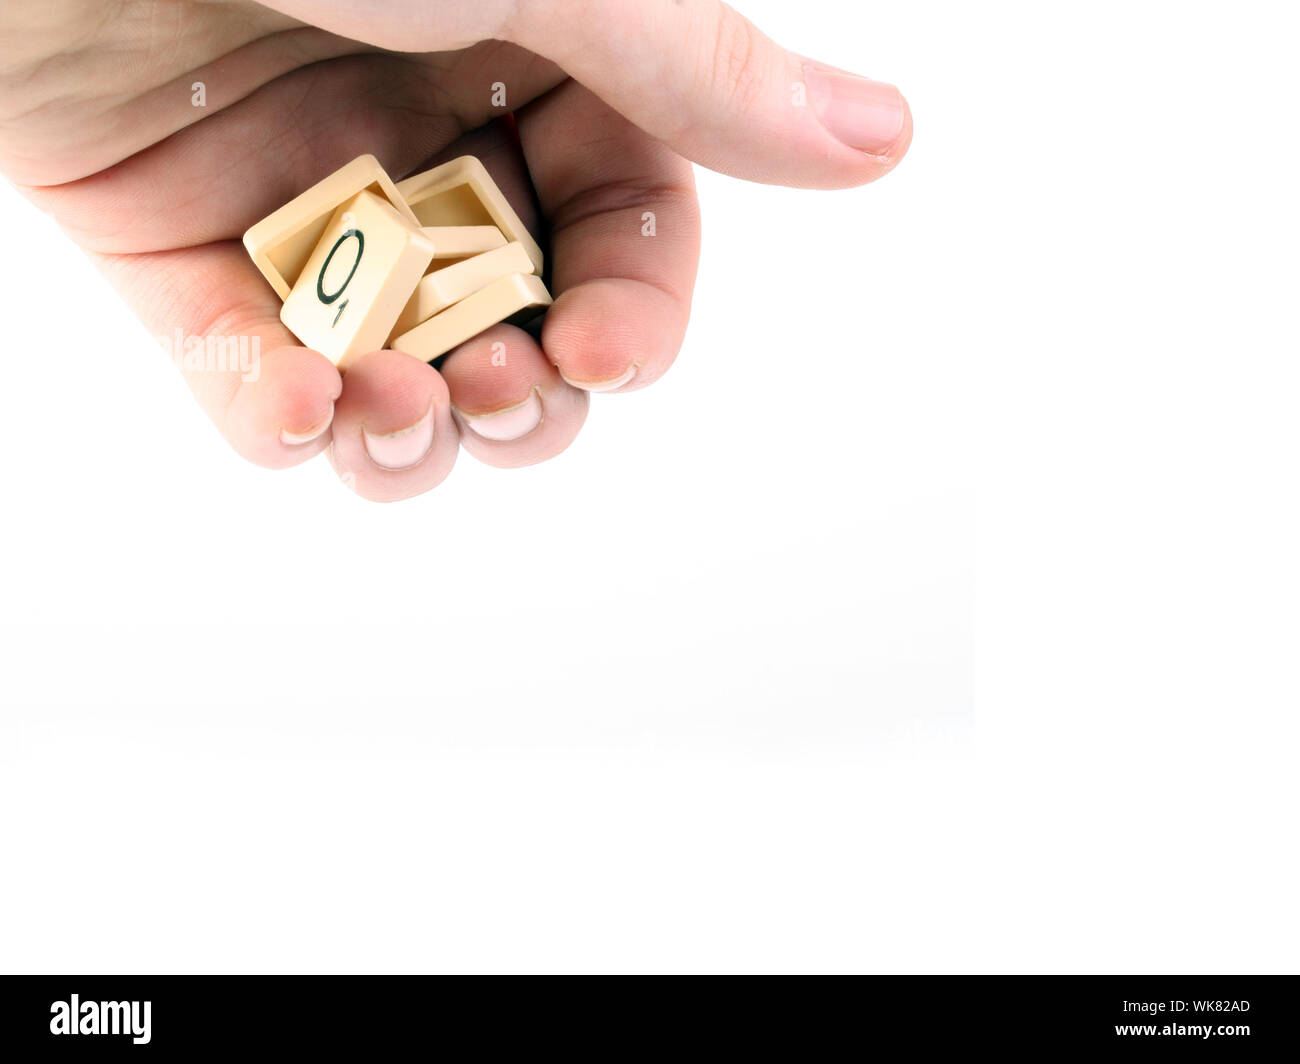 Imagen recortada de la mano que sujeta el Scrabble Cartas contra el fondo blanco. Foto de stock